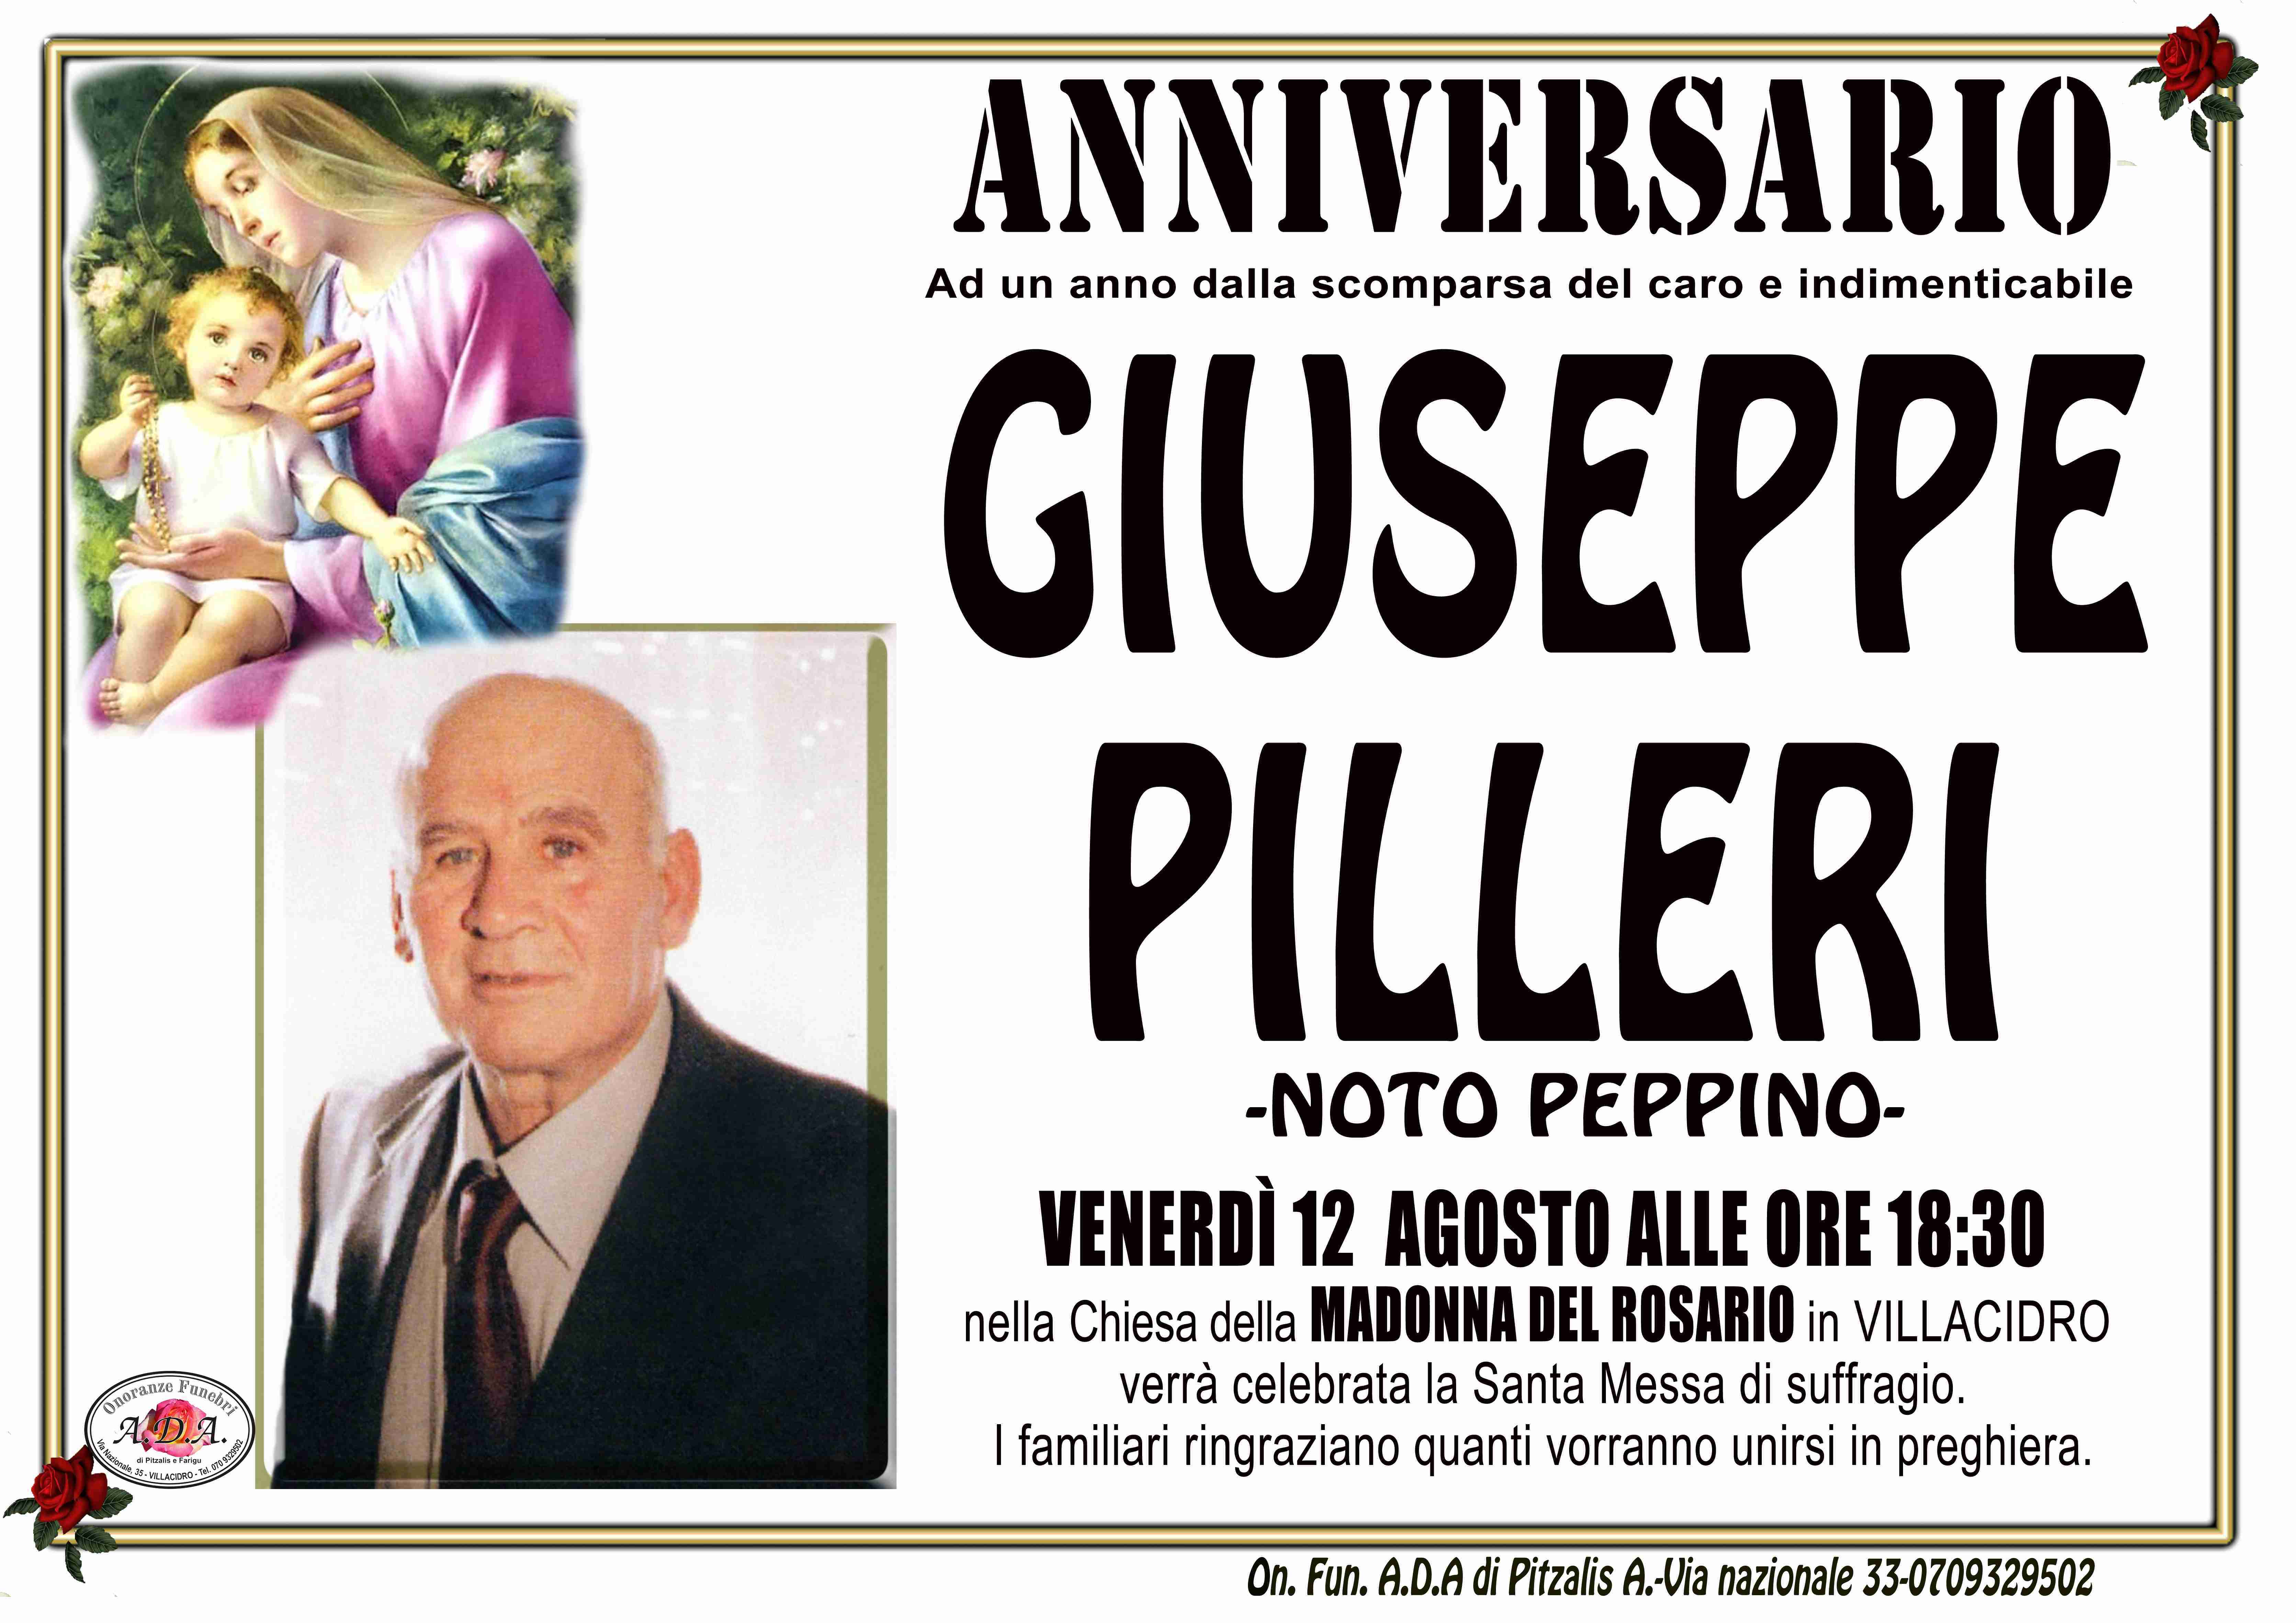 Giuseppe Pilleri